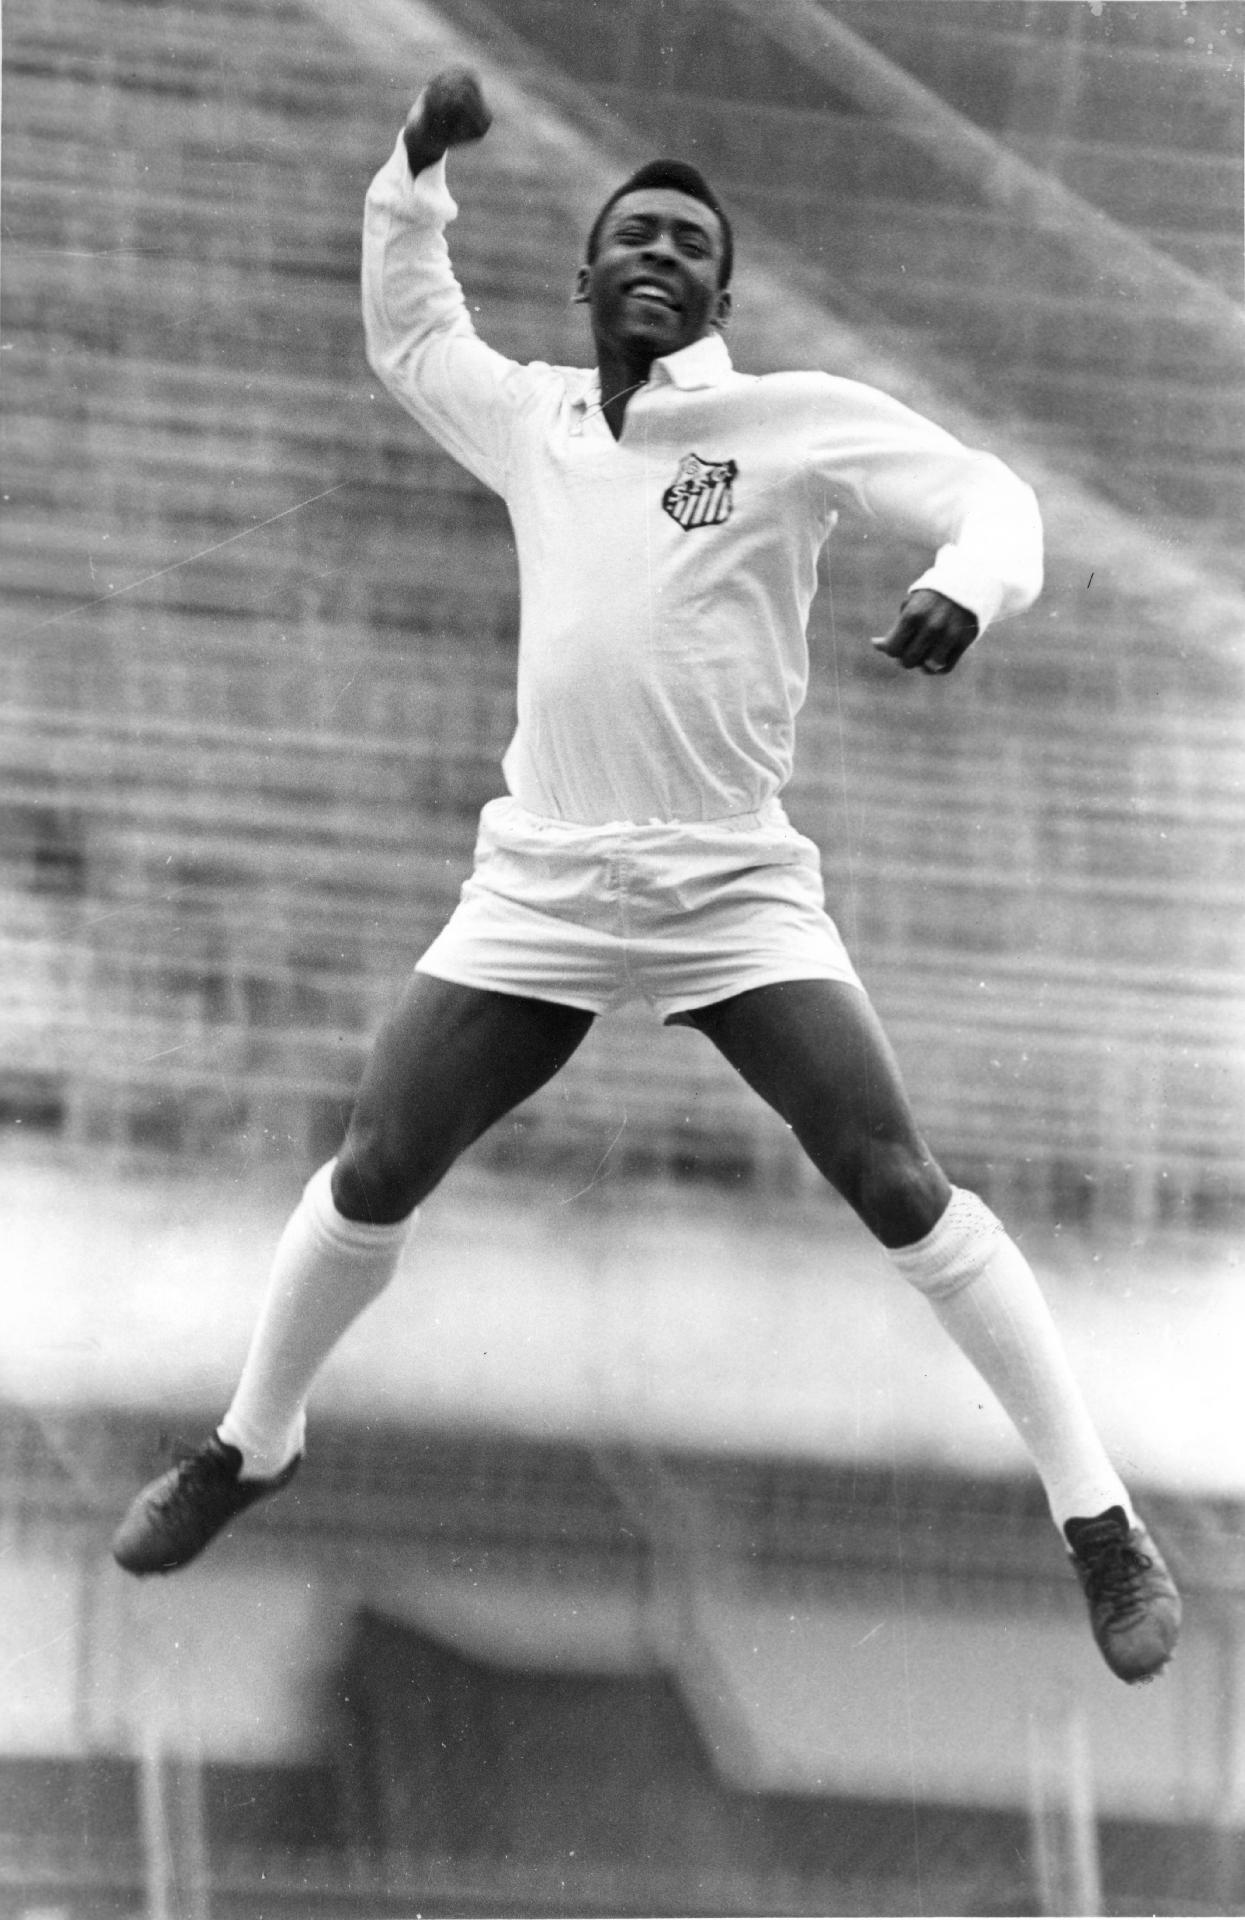 20.nov.1969- Pelé "soca o ar", gesto utilizado por ele ao marcar gol, durante ensaio fotográfico realizado no estádio do Pacaembu, em São Paulo. - Domicio Pinheiro/Estadão Conteúdo